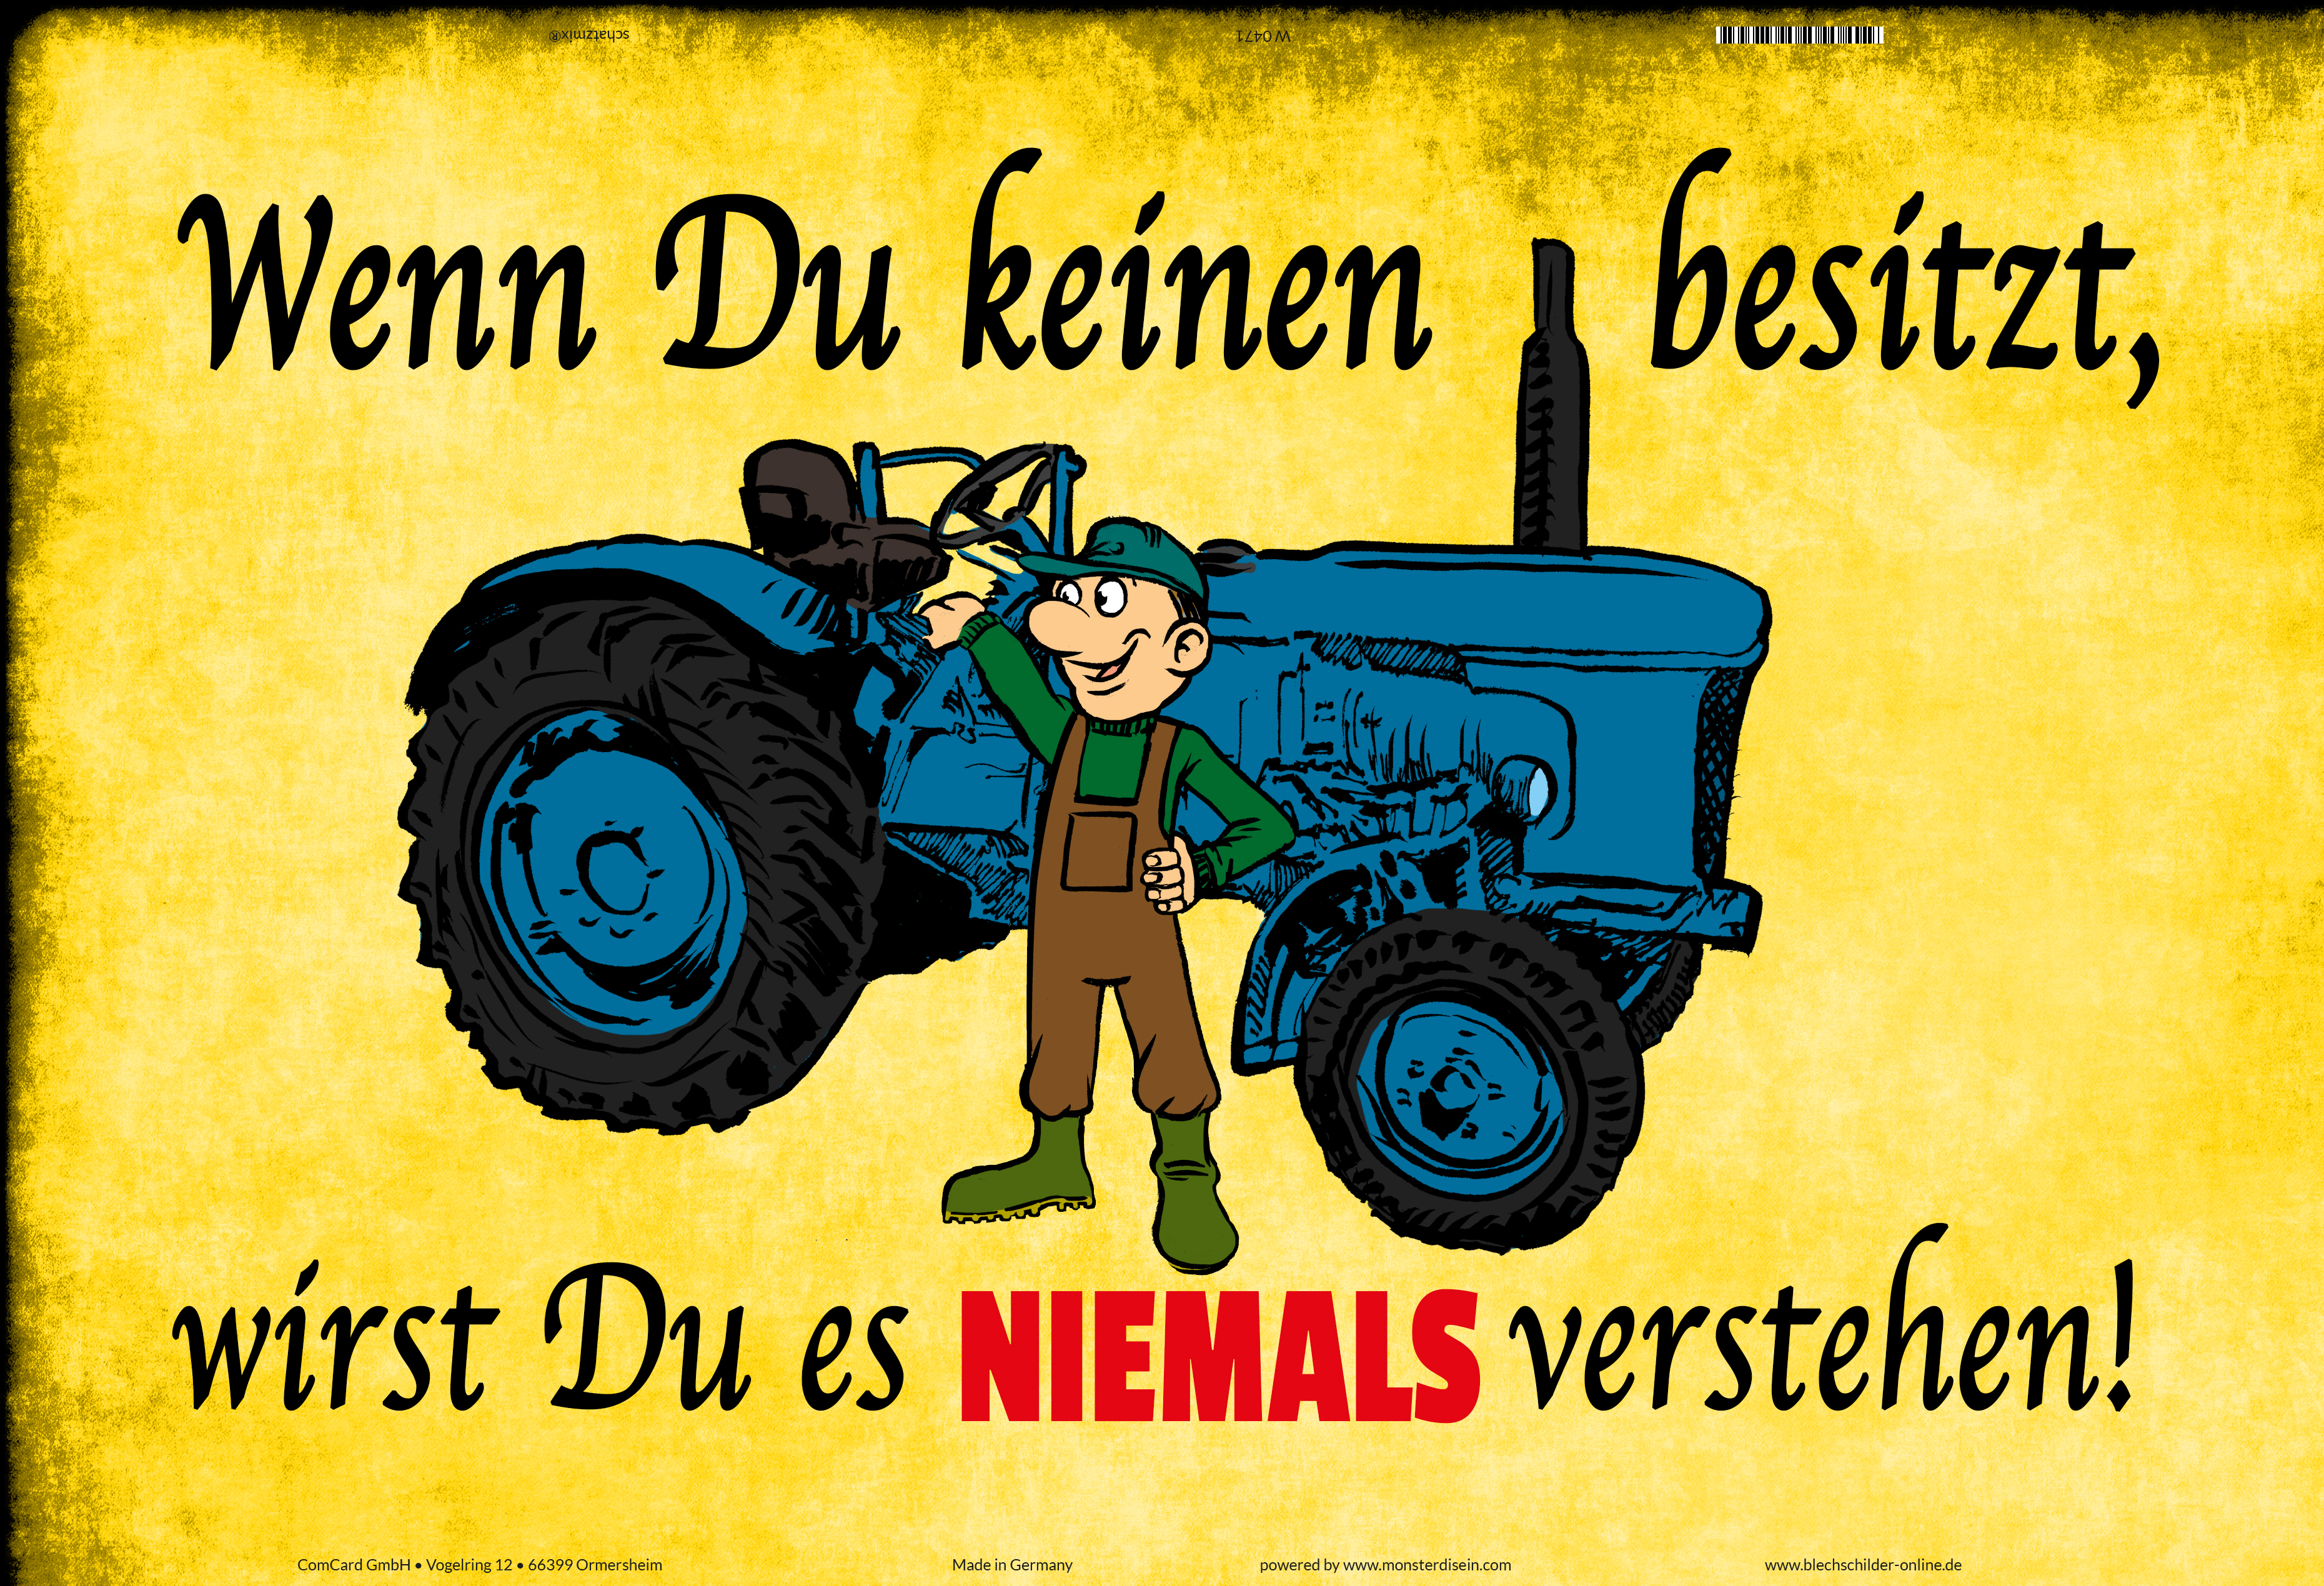 Schatzmix echte männer Fahren Traktor trekkor Bauer blechschild lustig Comic spruchschild